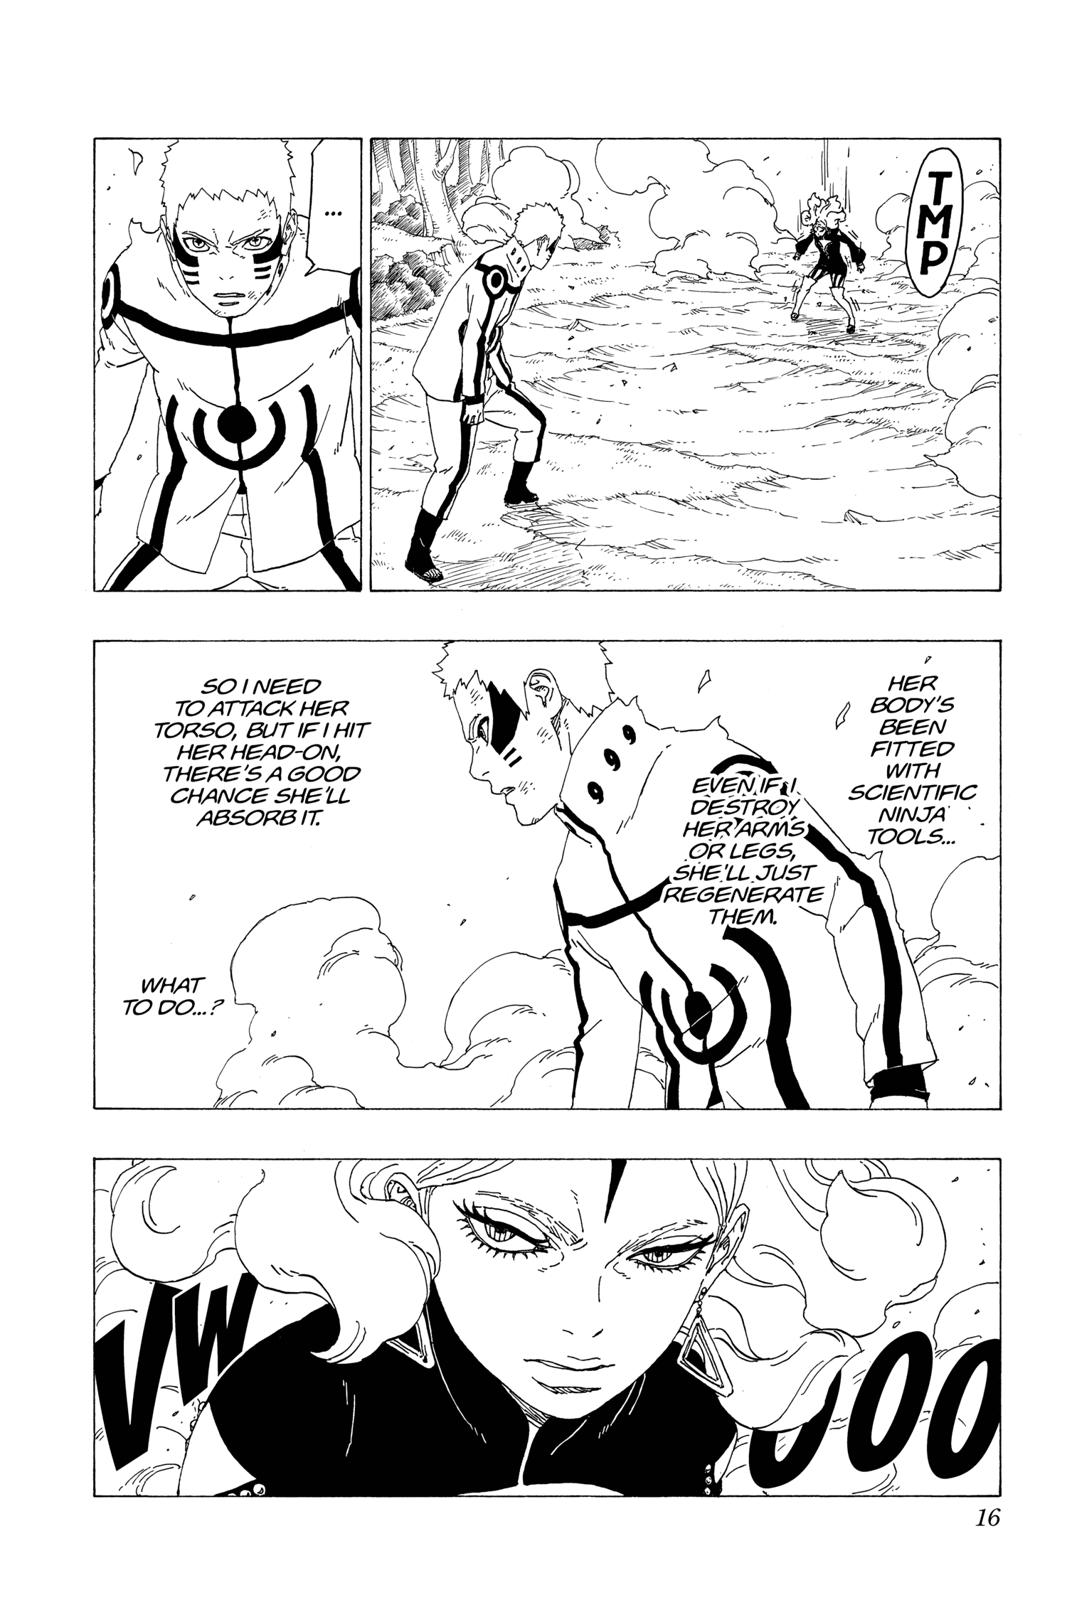 A deusa kunoichi - Página 2 0032-016